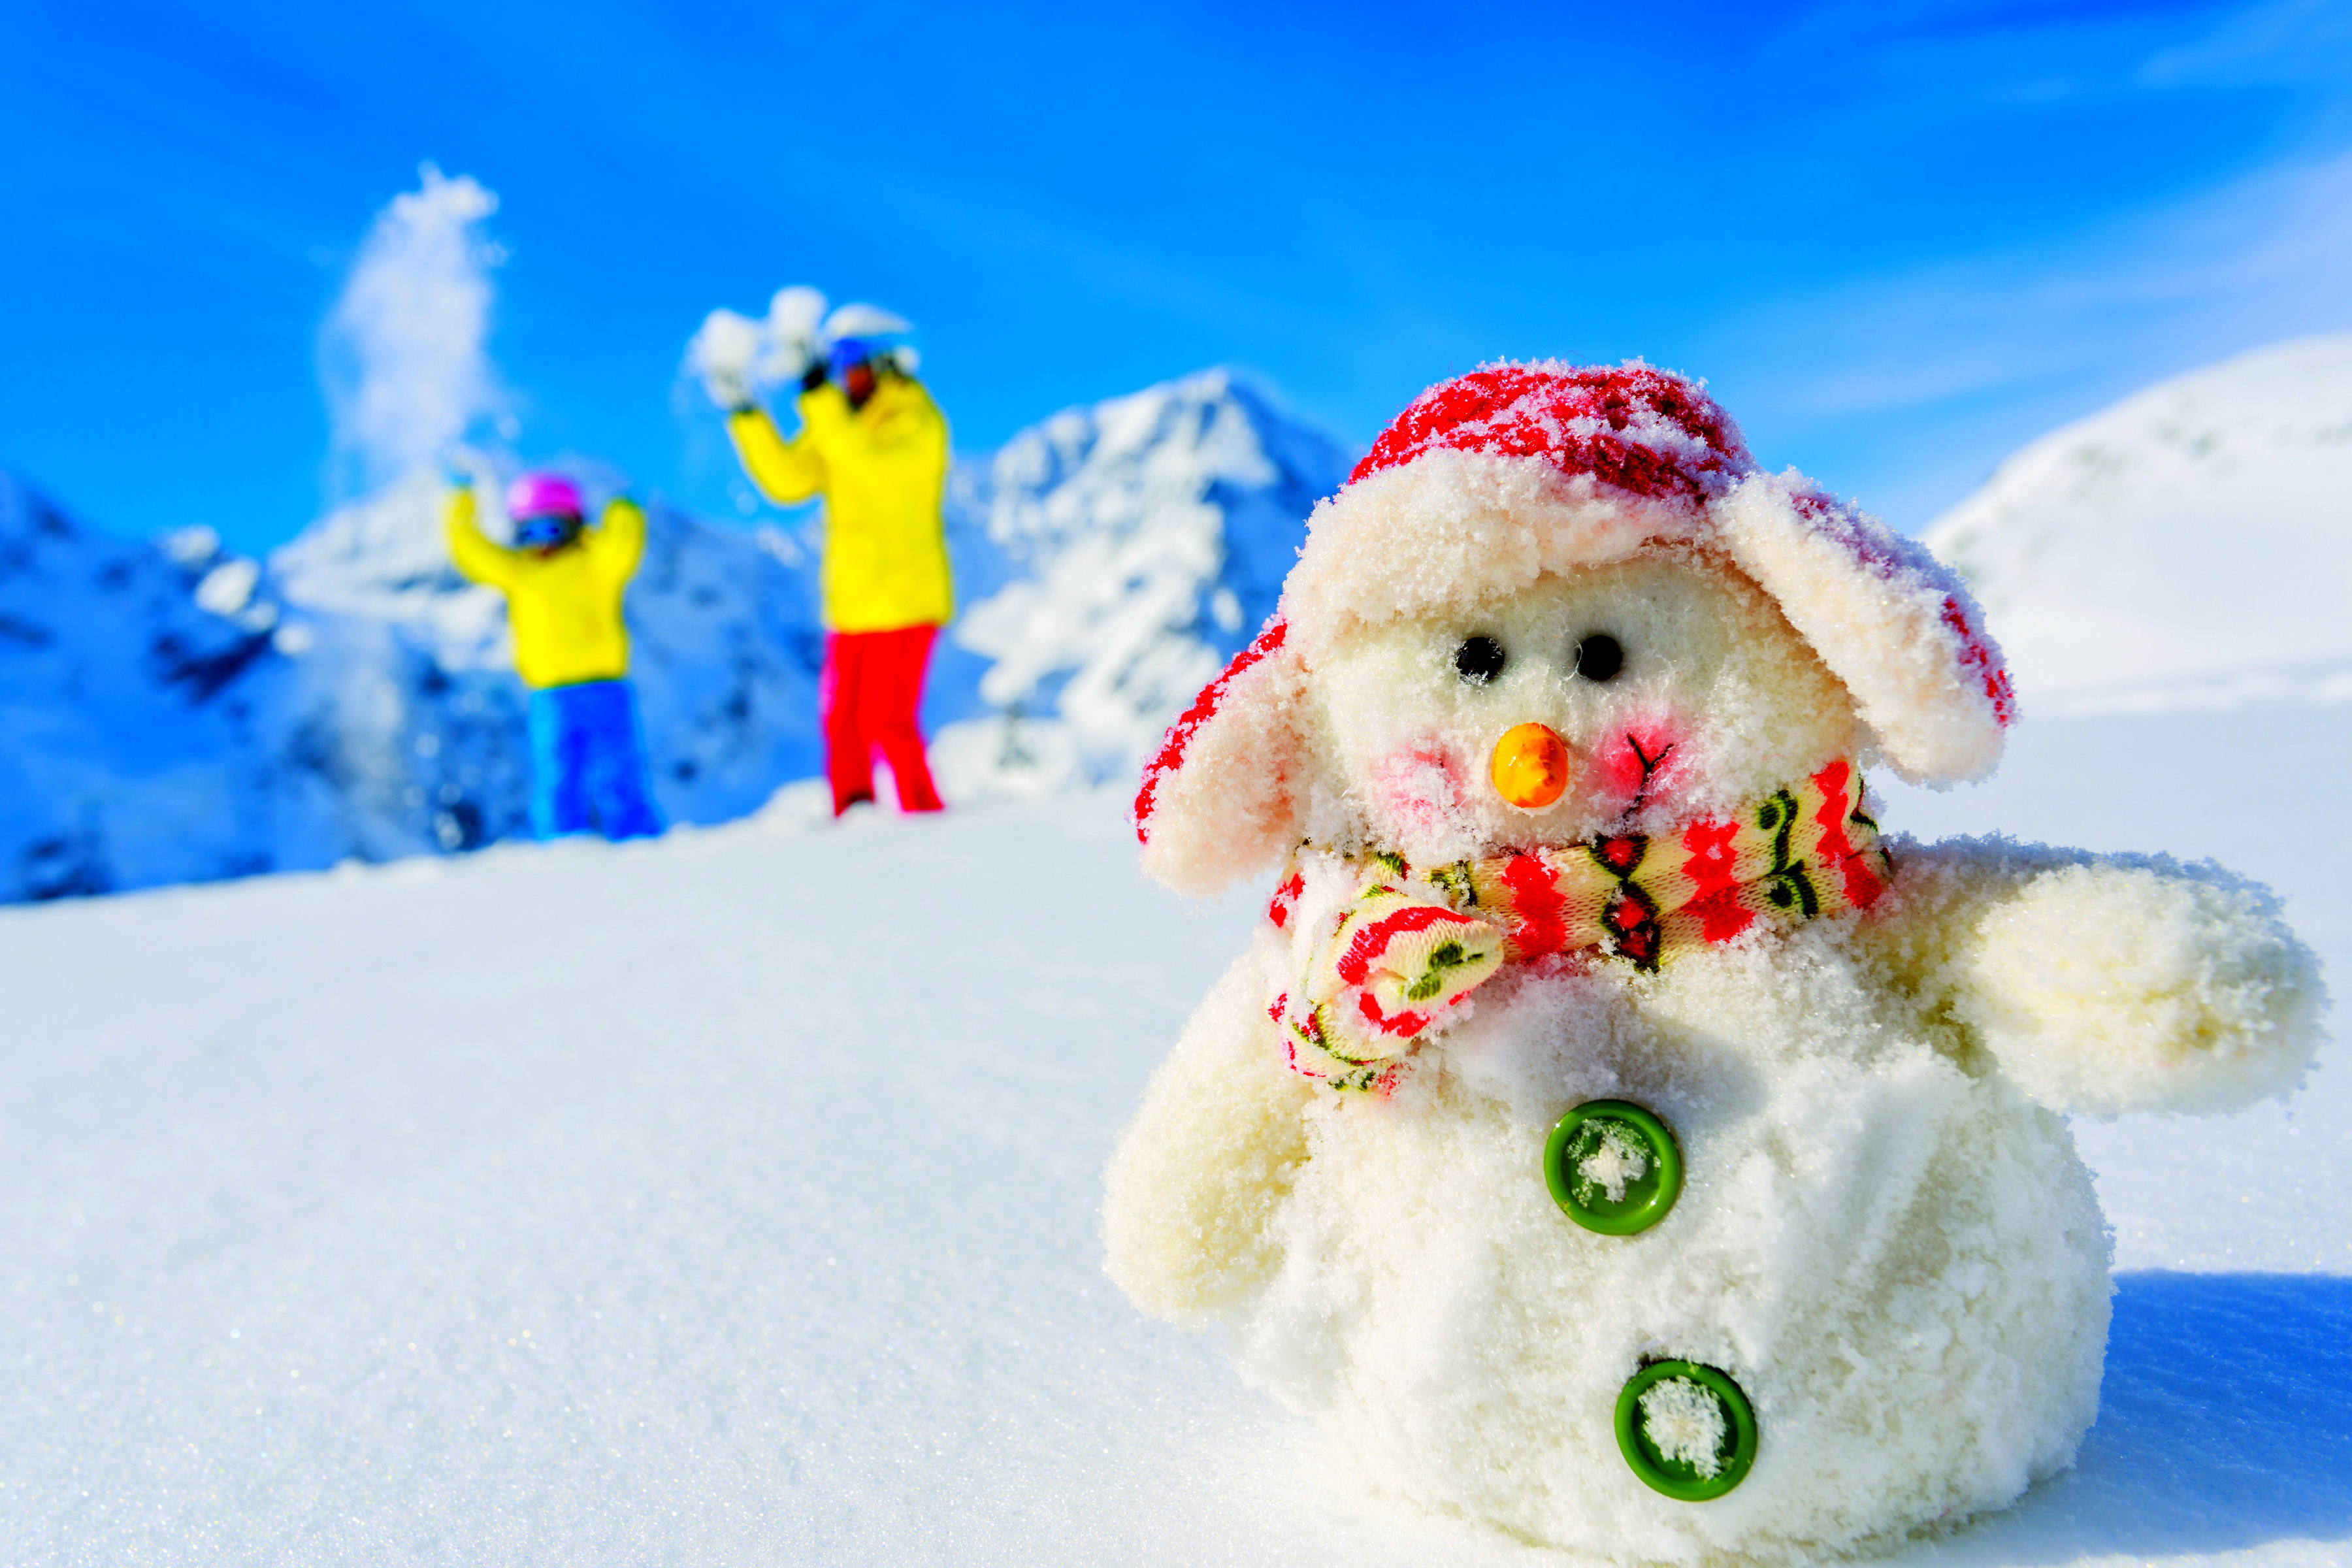 Скачать картинку Зима, Снег, Праздник, Снеговик, Фотографии в телефон бесплатно.